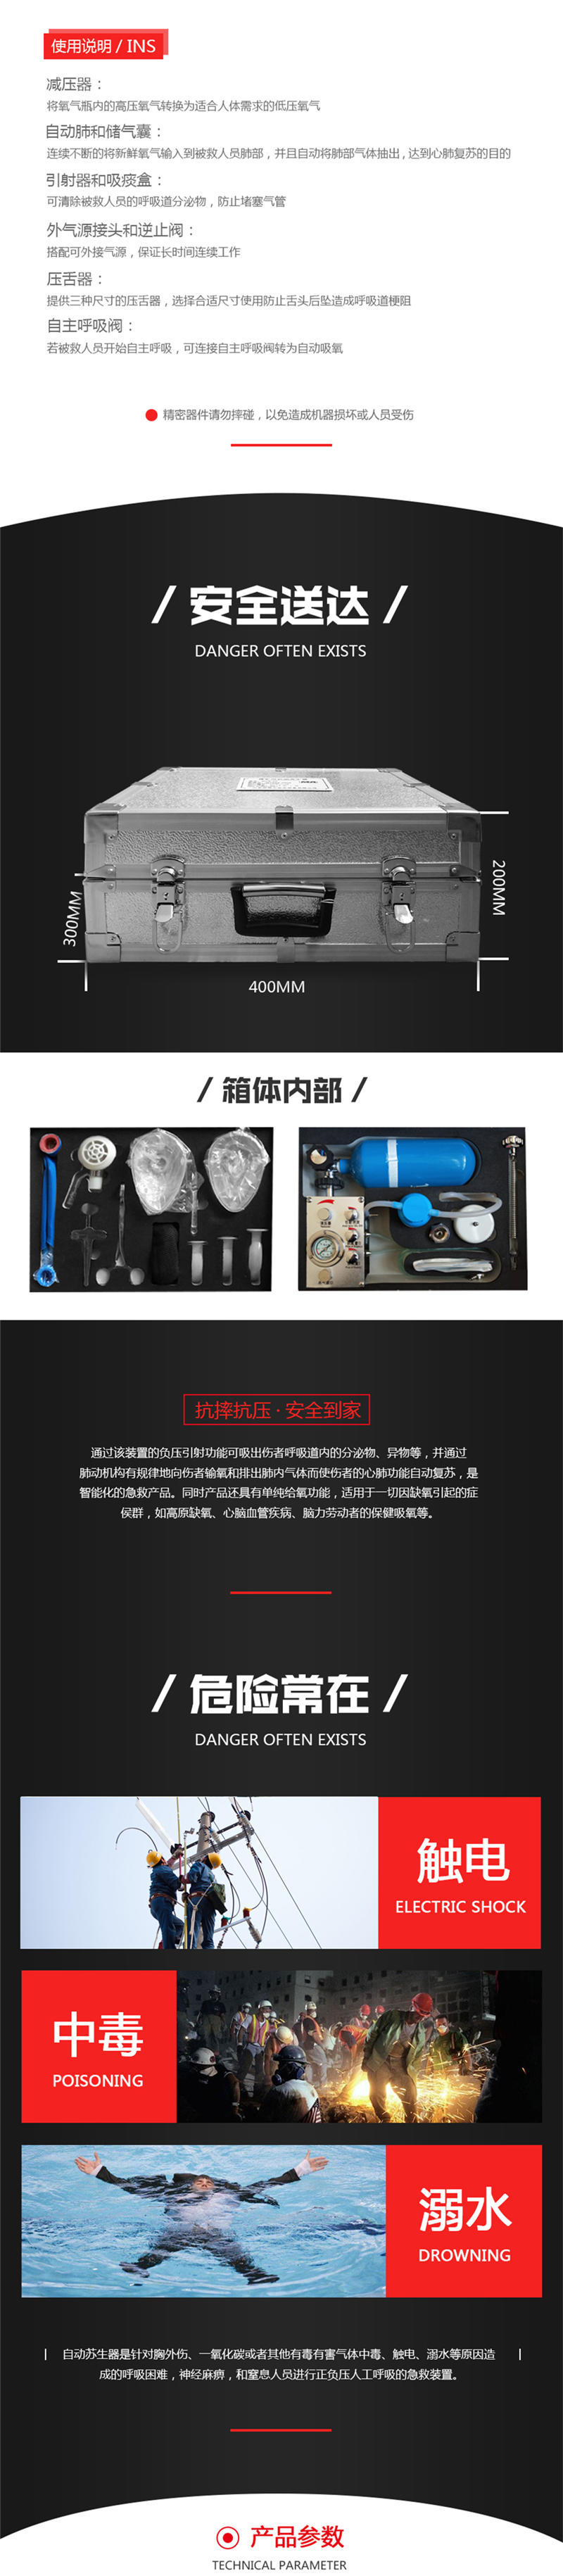 生产MZS30..自动苏生器 上海皓驹厂家 矿用苏生器 价格 矿用自动苏生器示例图1